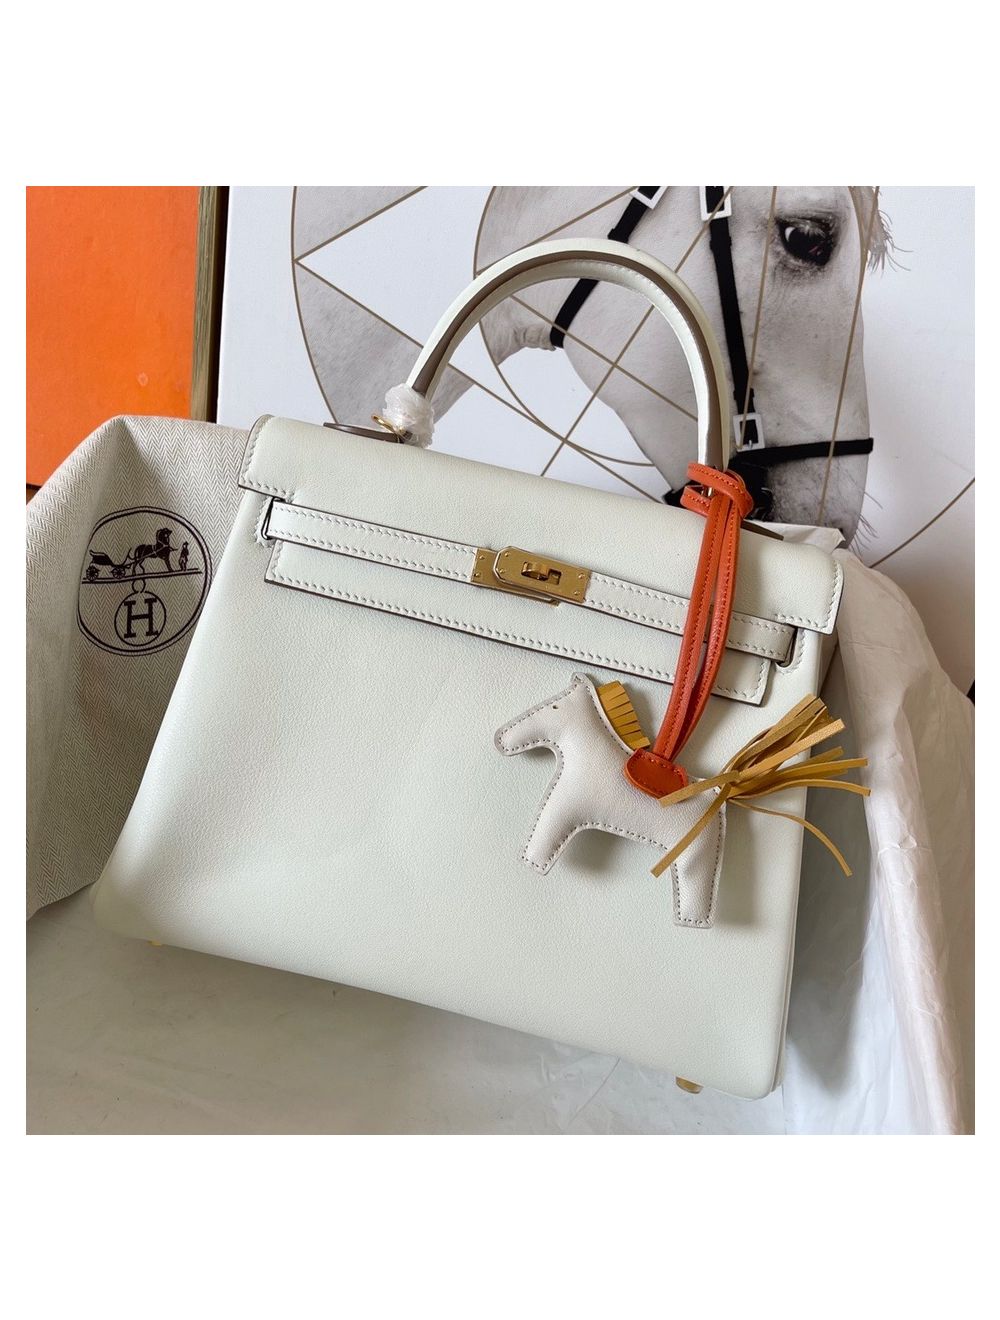 Replica Hermes Kelly Retourne 25 Handmade Bag In Gold Swift Calfskin